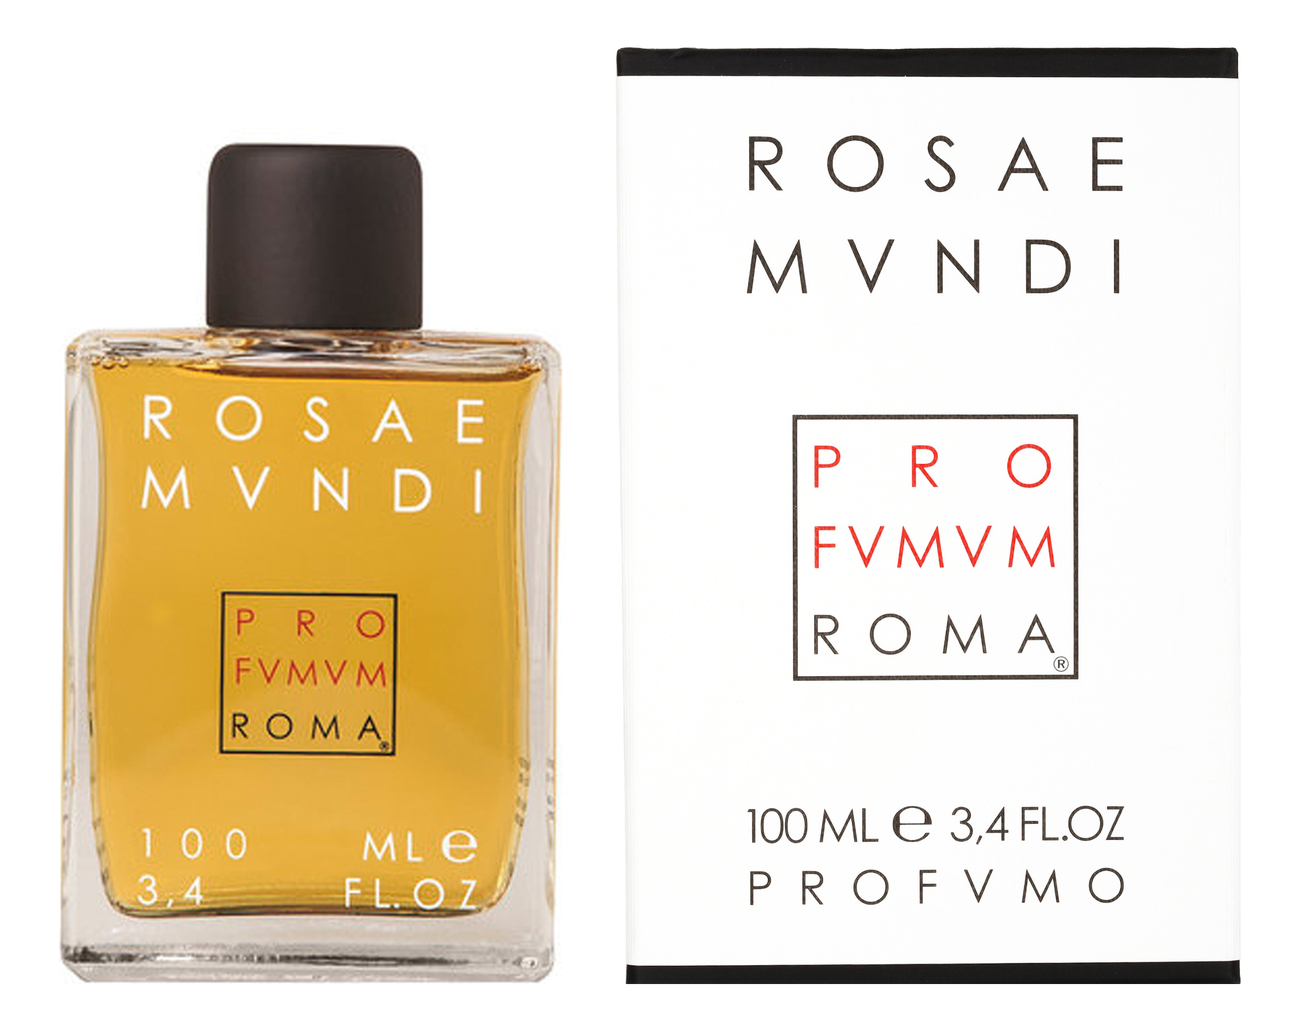 Купить Rosae Mundi: парфюмерная вода 100мл, Profumum Roma